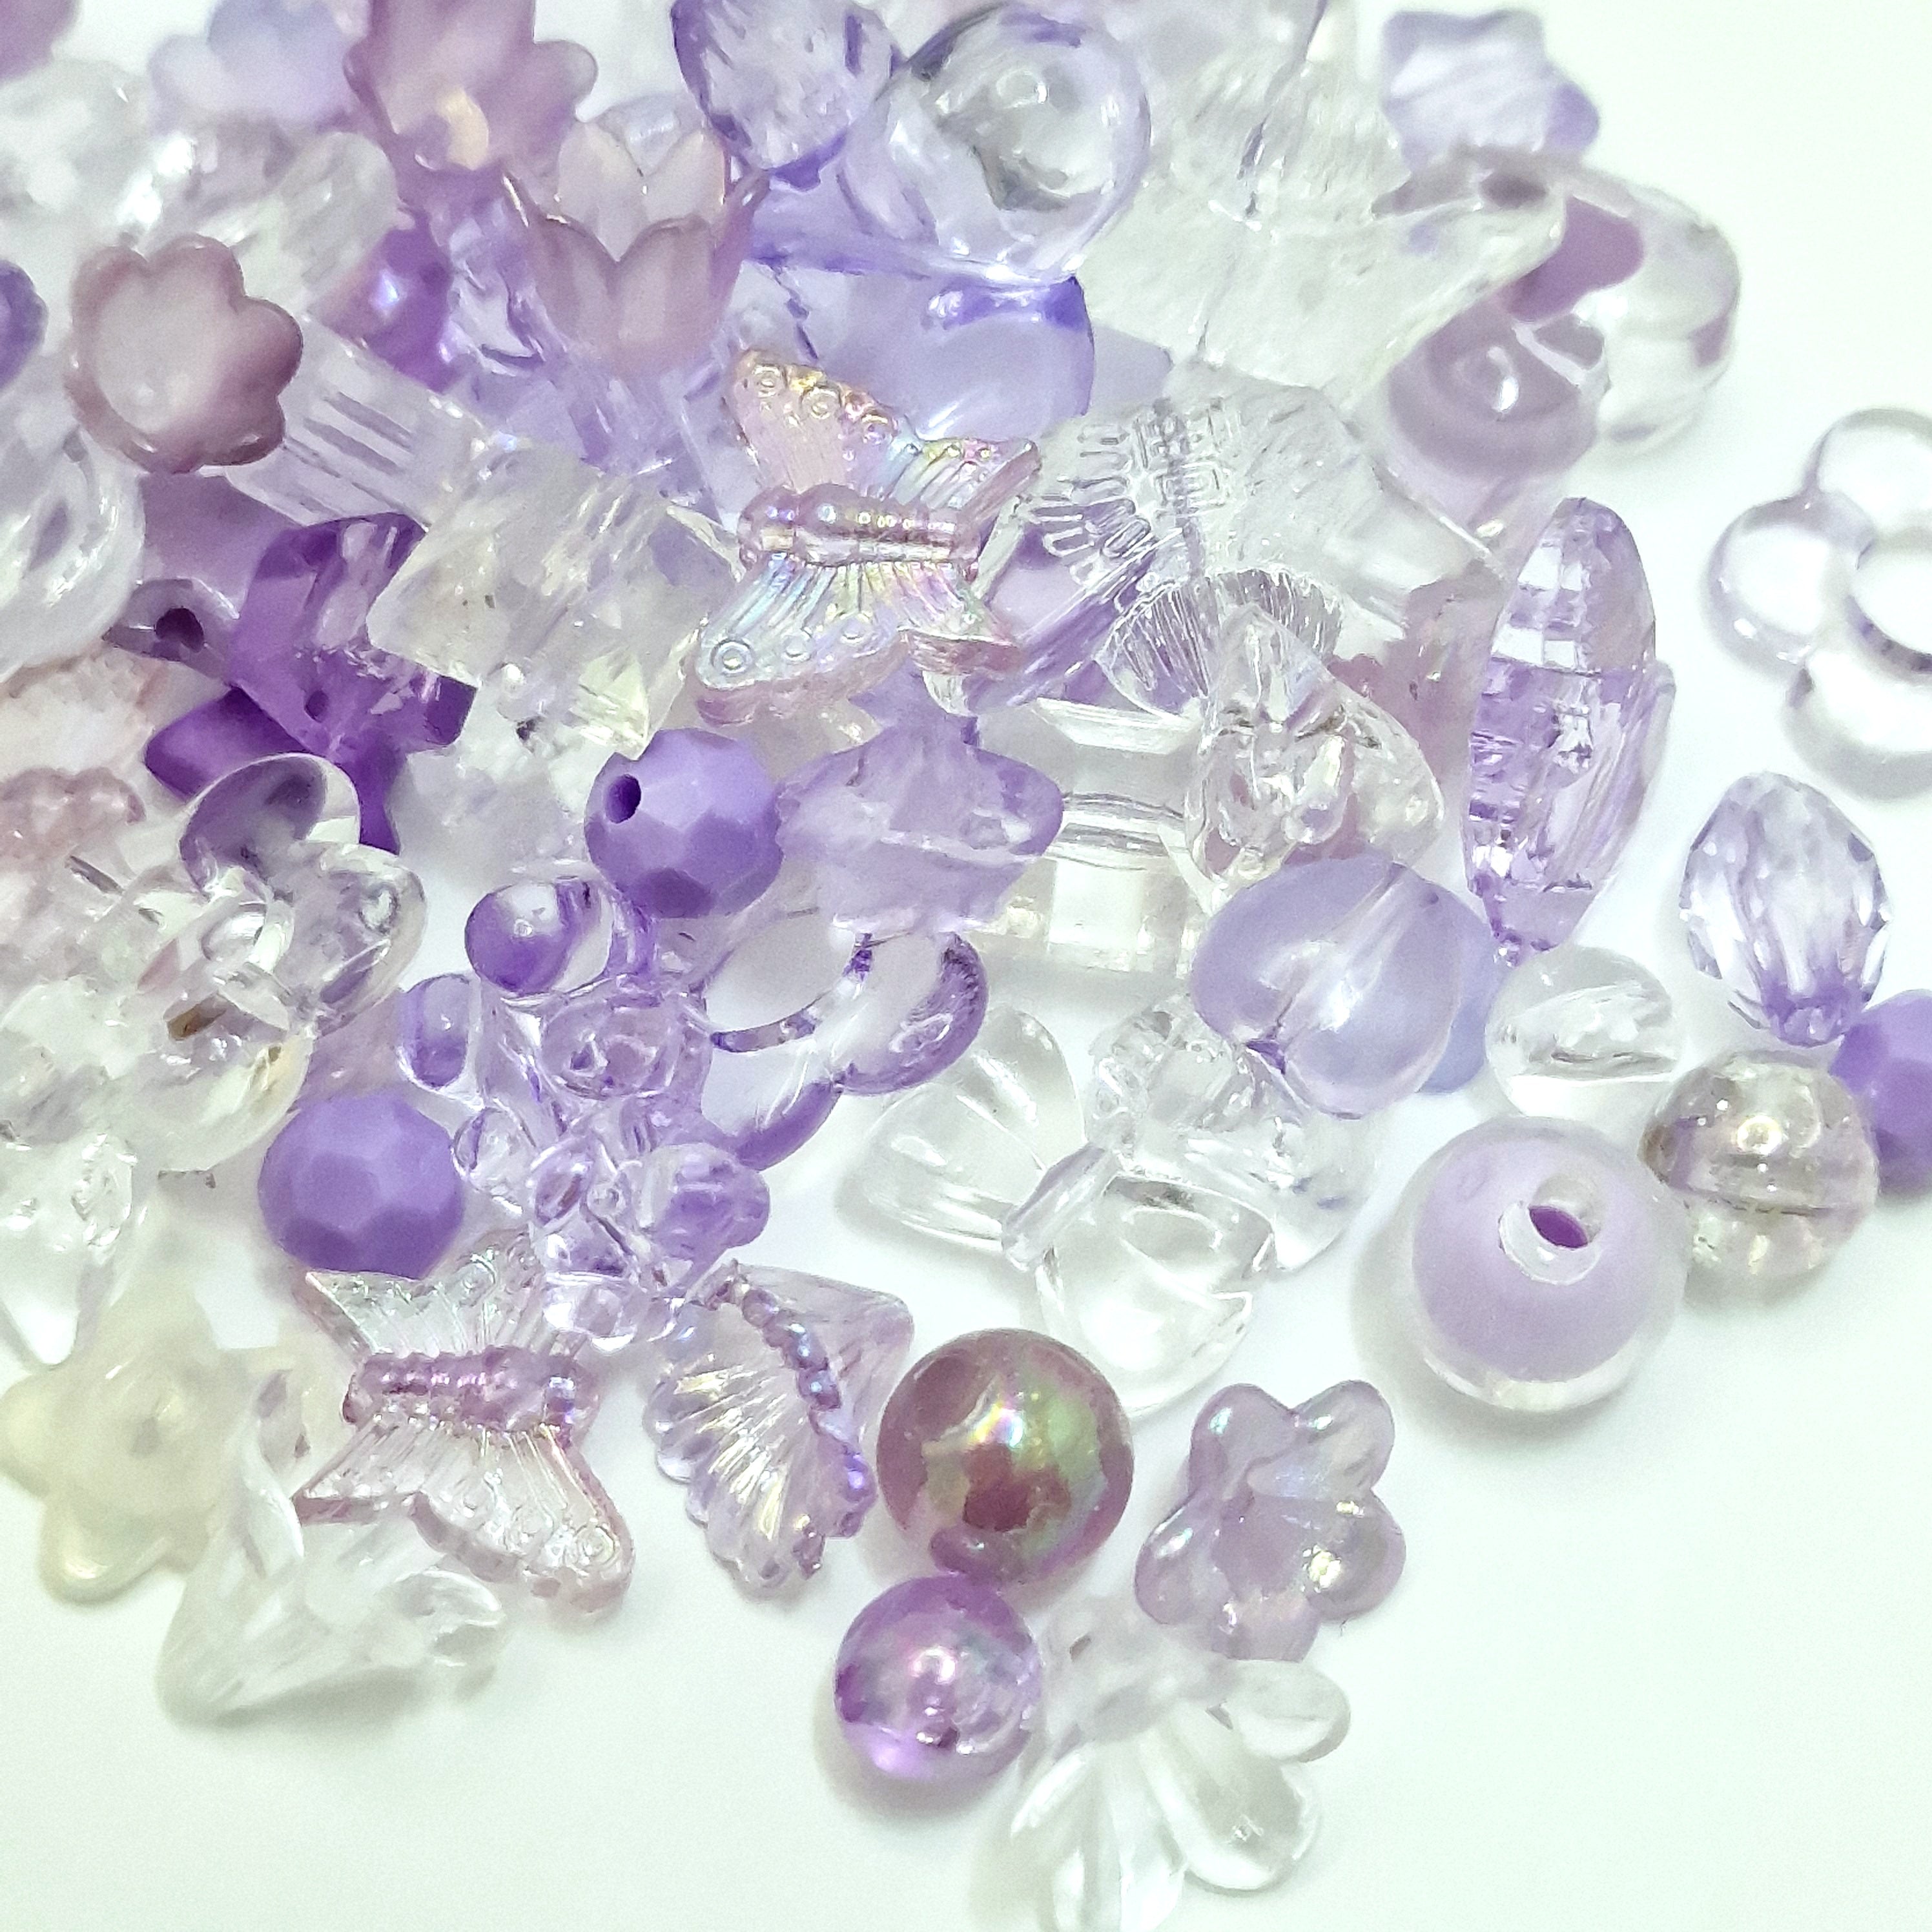 MajorCrafts 50g Purple Theme Mixed Shapes & Sizes Acrylic Beads